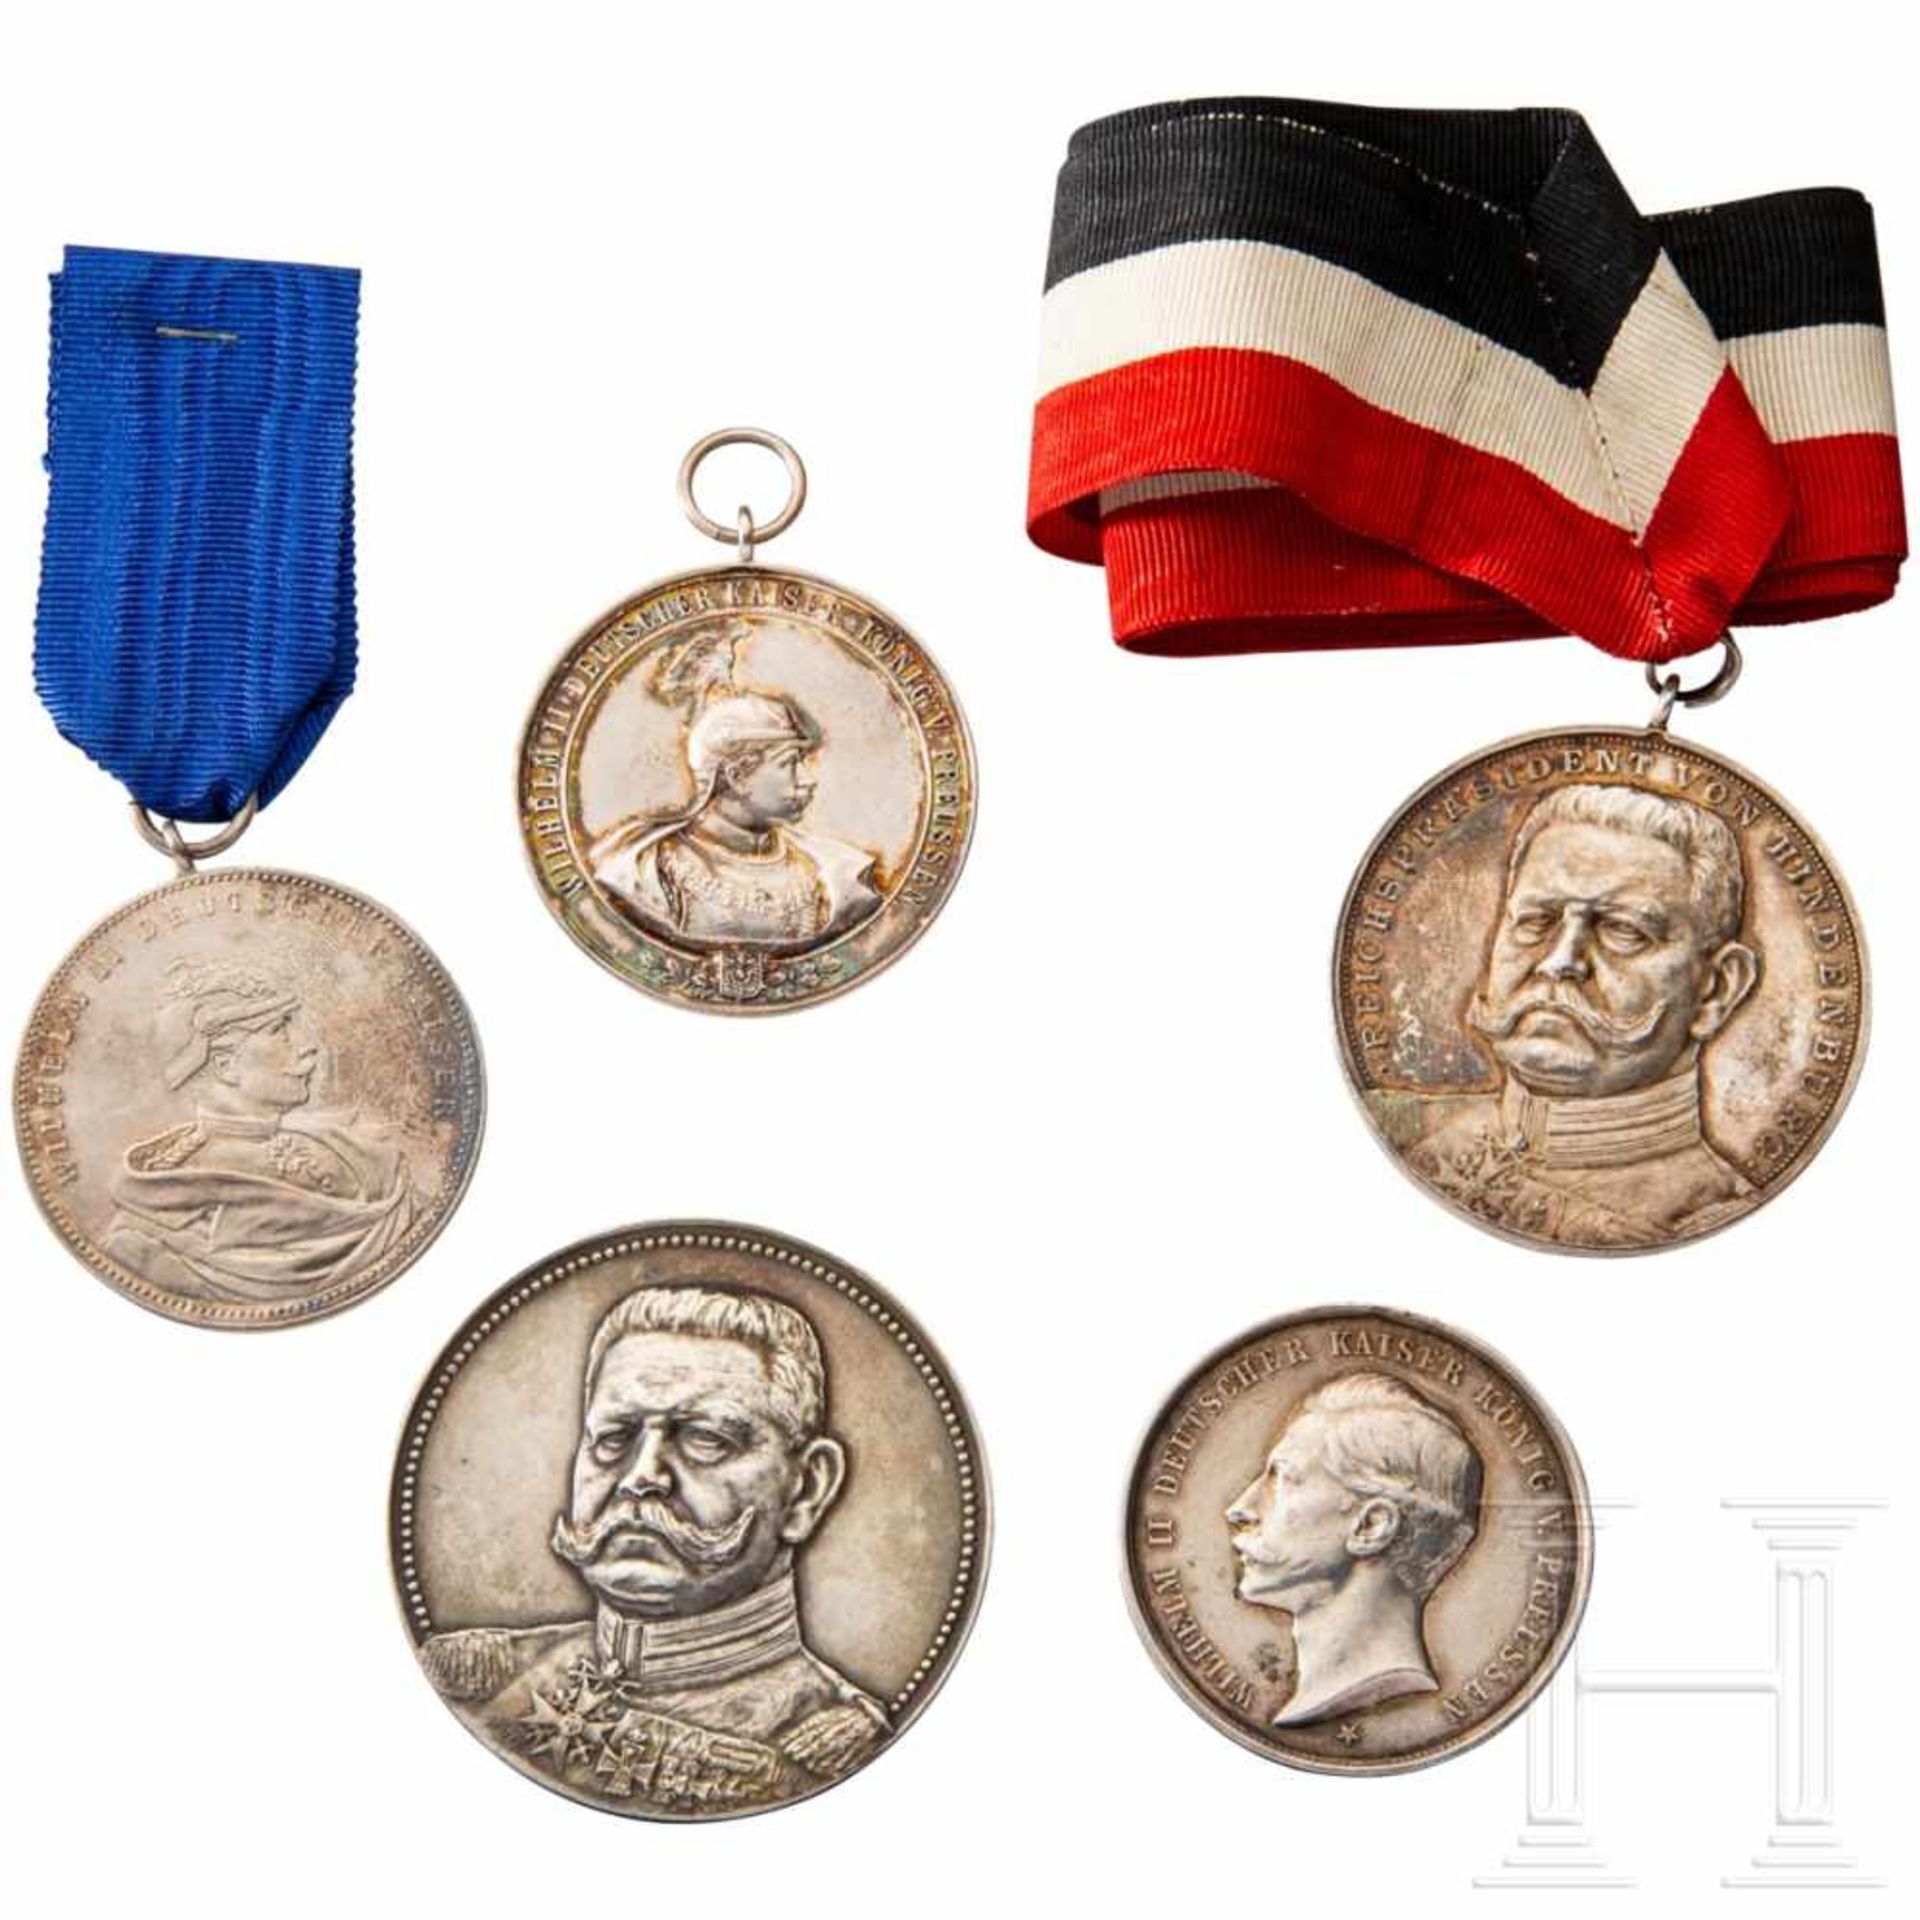 Five shooting prize medalsÜberwiegend aus Silber, verschiedene Ausführungen, Herrscherbildnis (